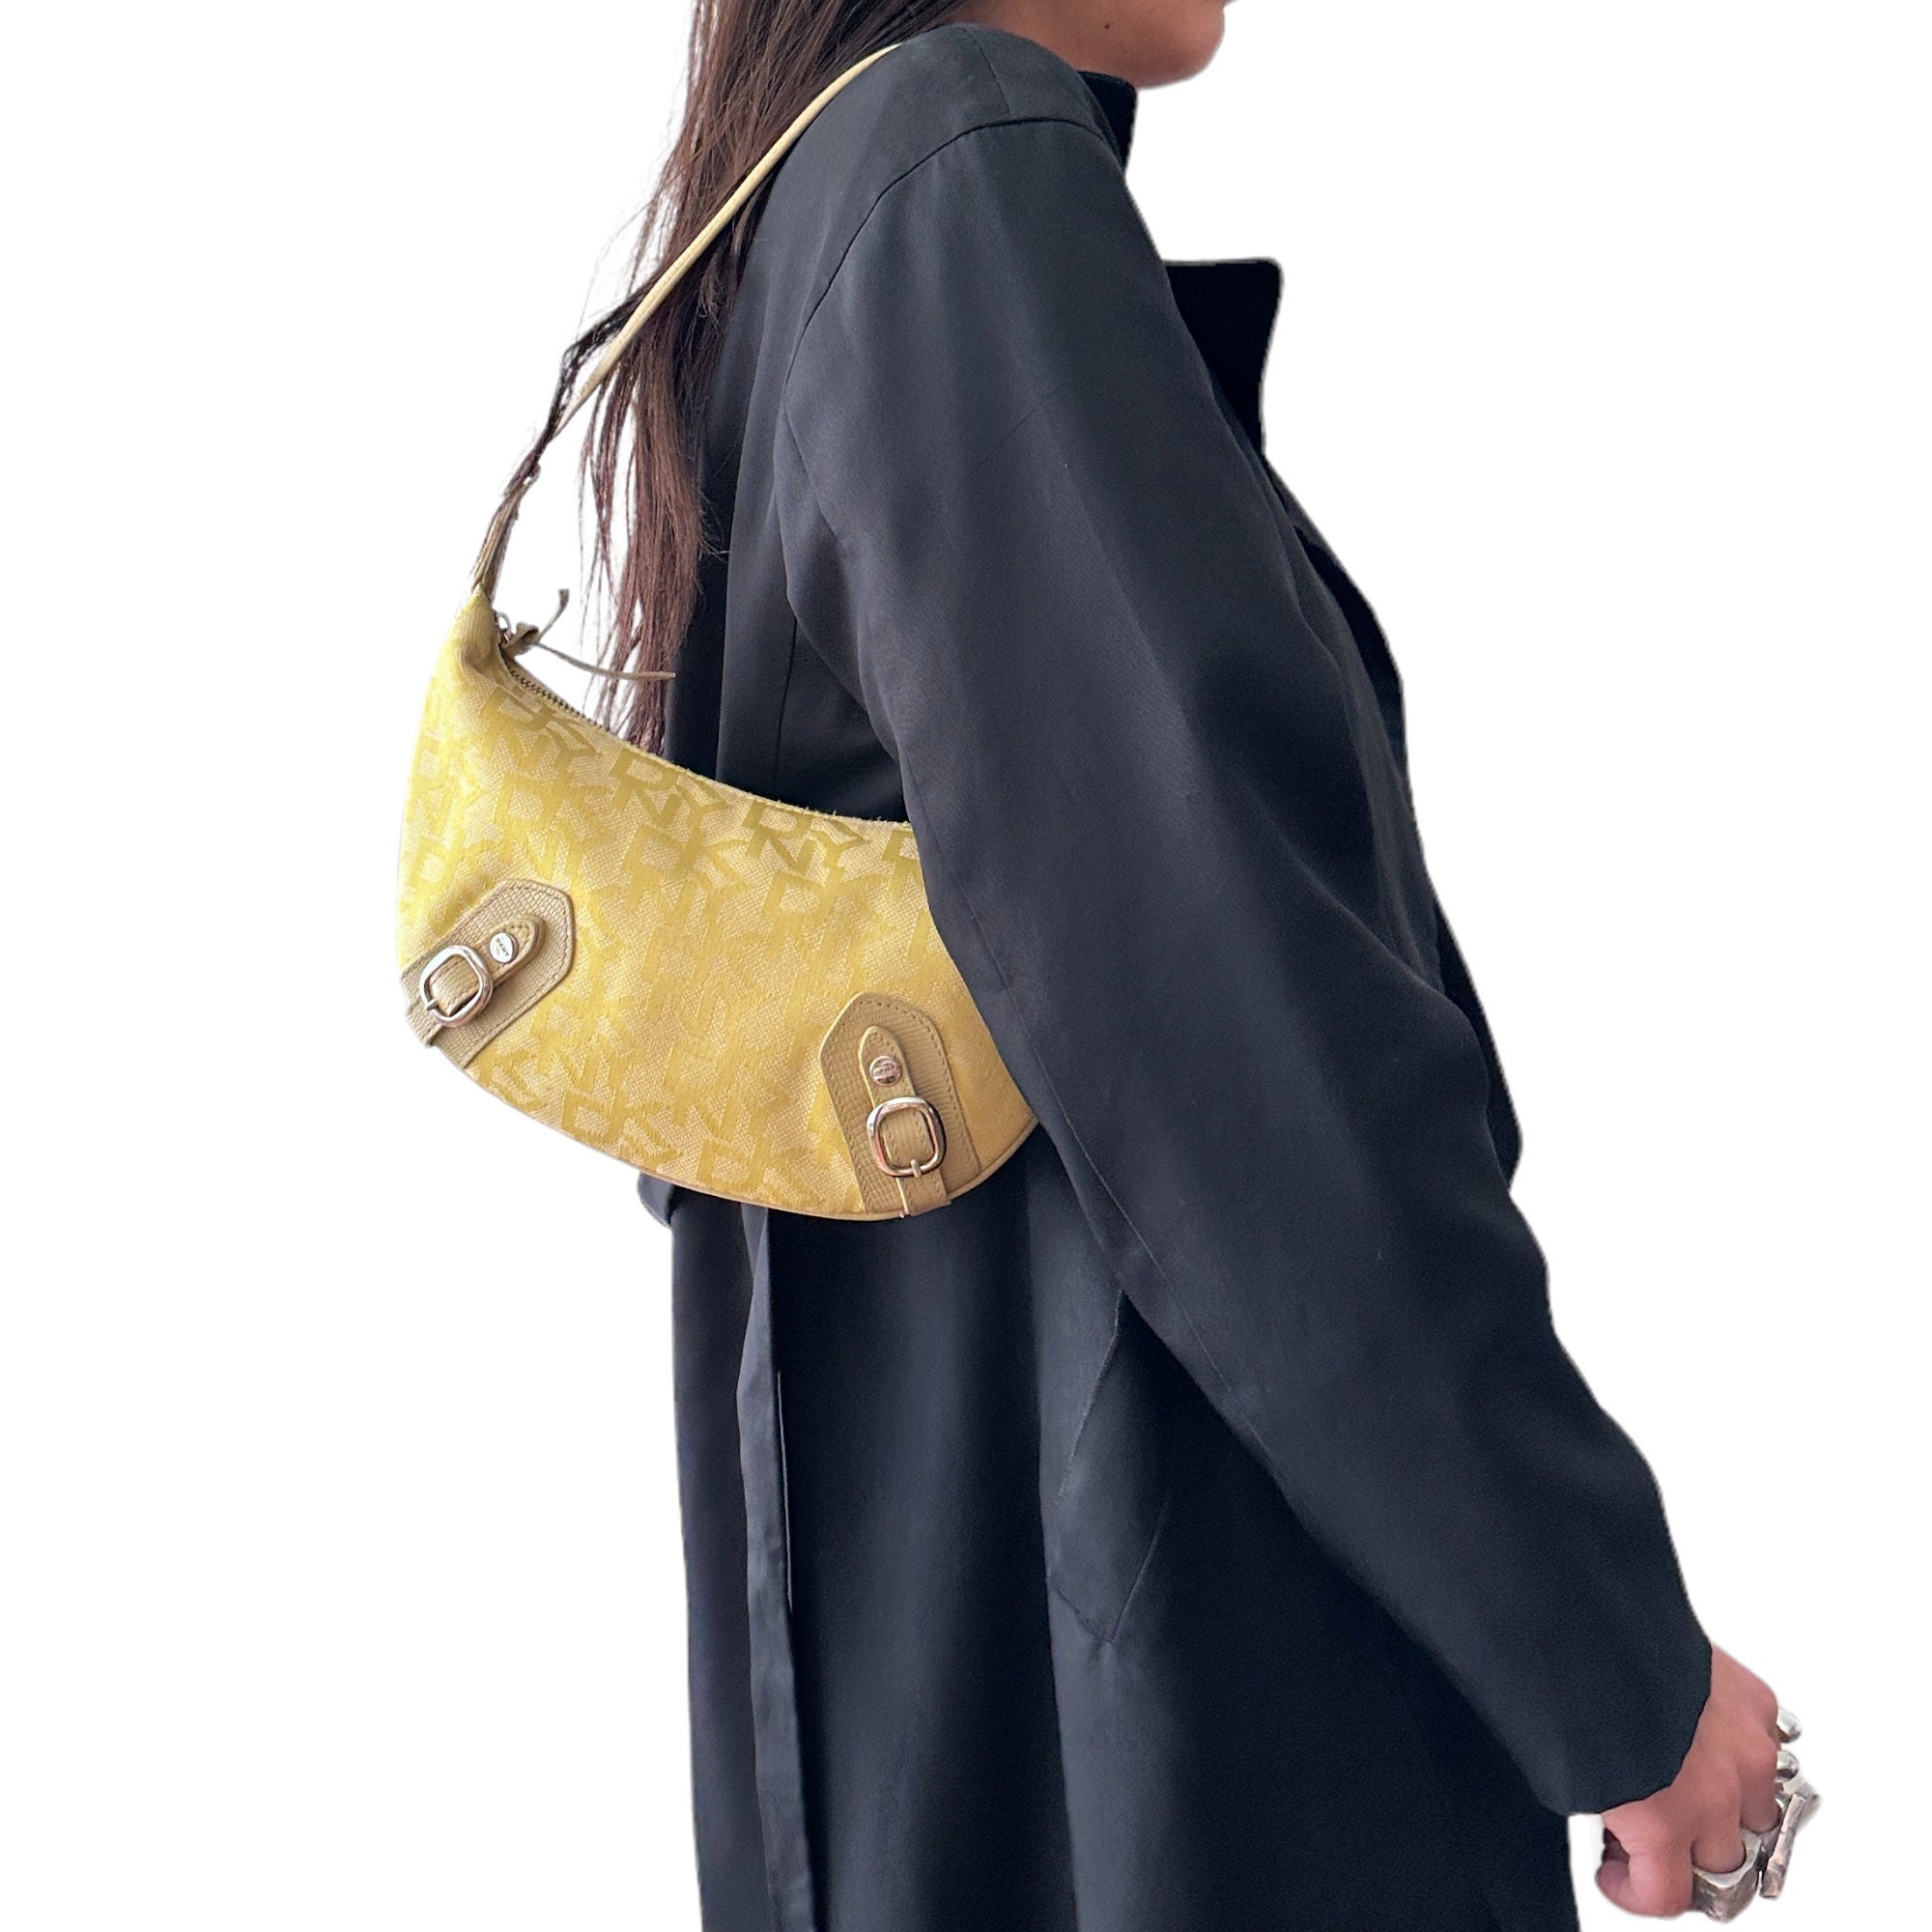 DKNY Donna Karan New York Monogram Baguette Shoulder Bag